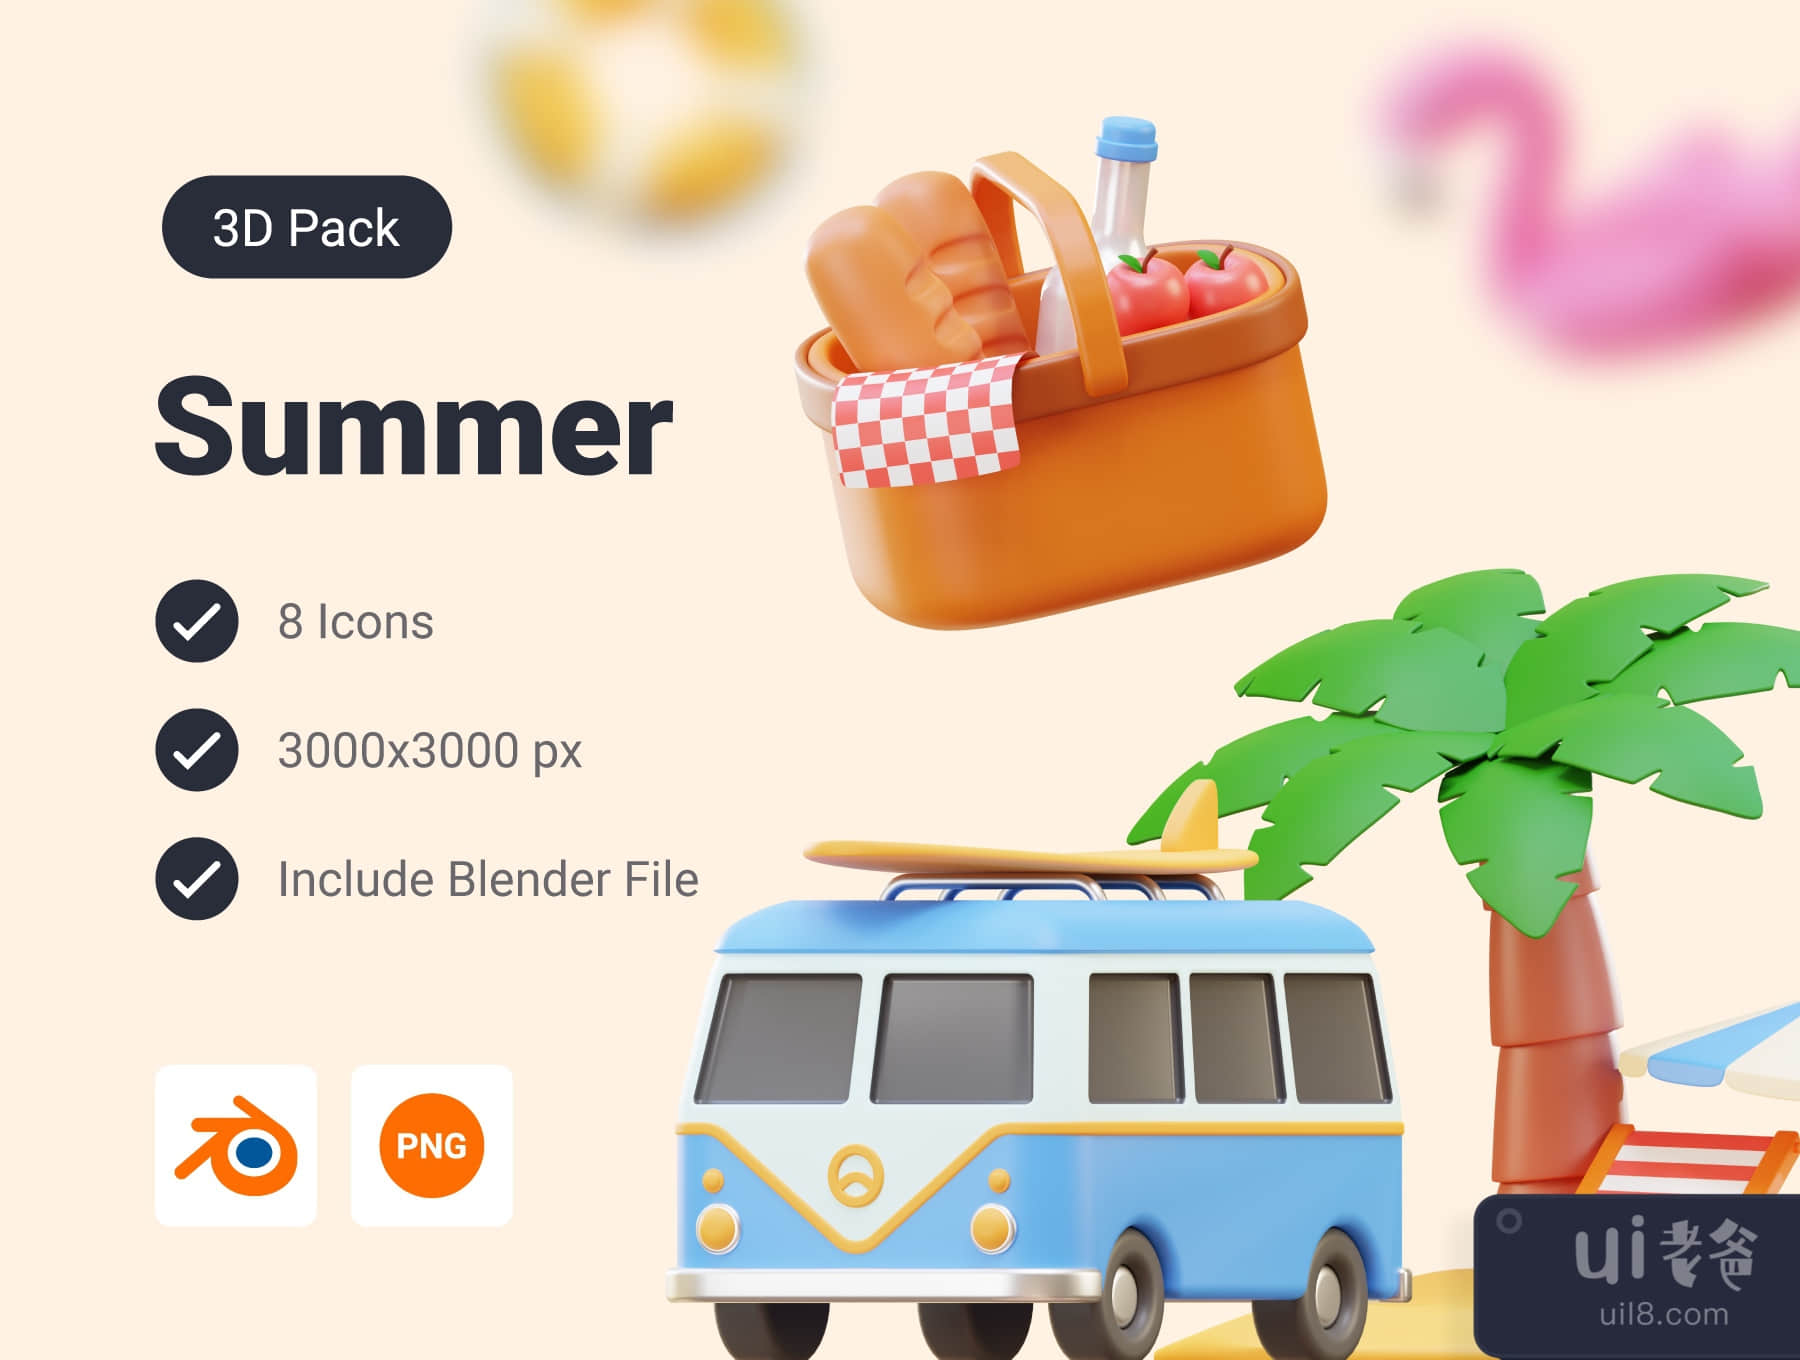 暑假3D图标包 (Summer Vacation 3D Icon Pack)插图5